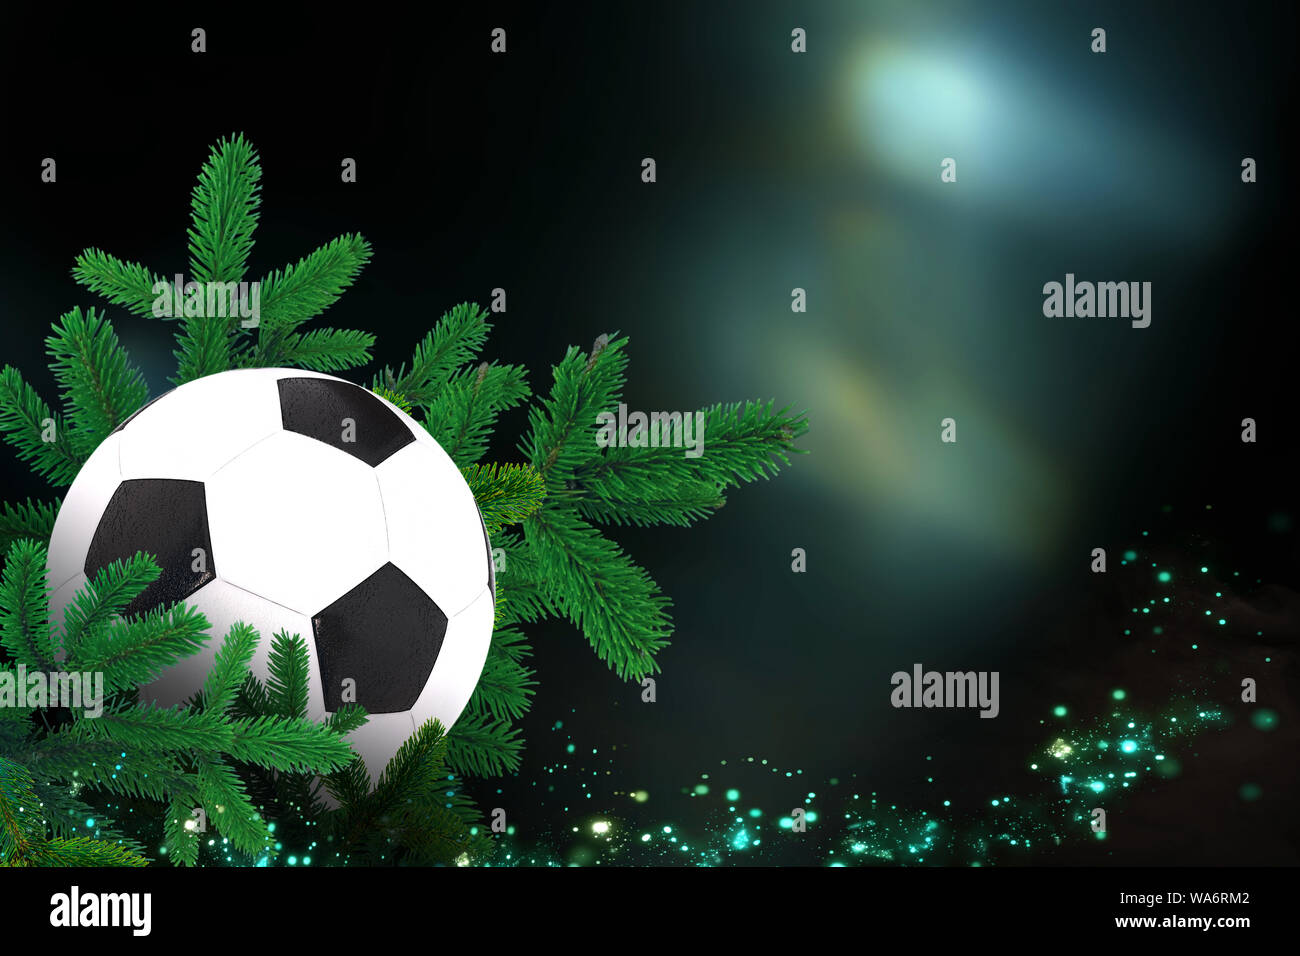 Fußball, Sport Weihnachtskarte mit festlichen Dekorationen. Stockfoto